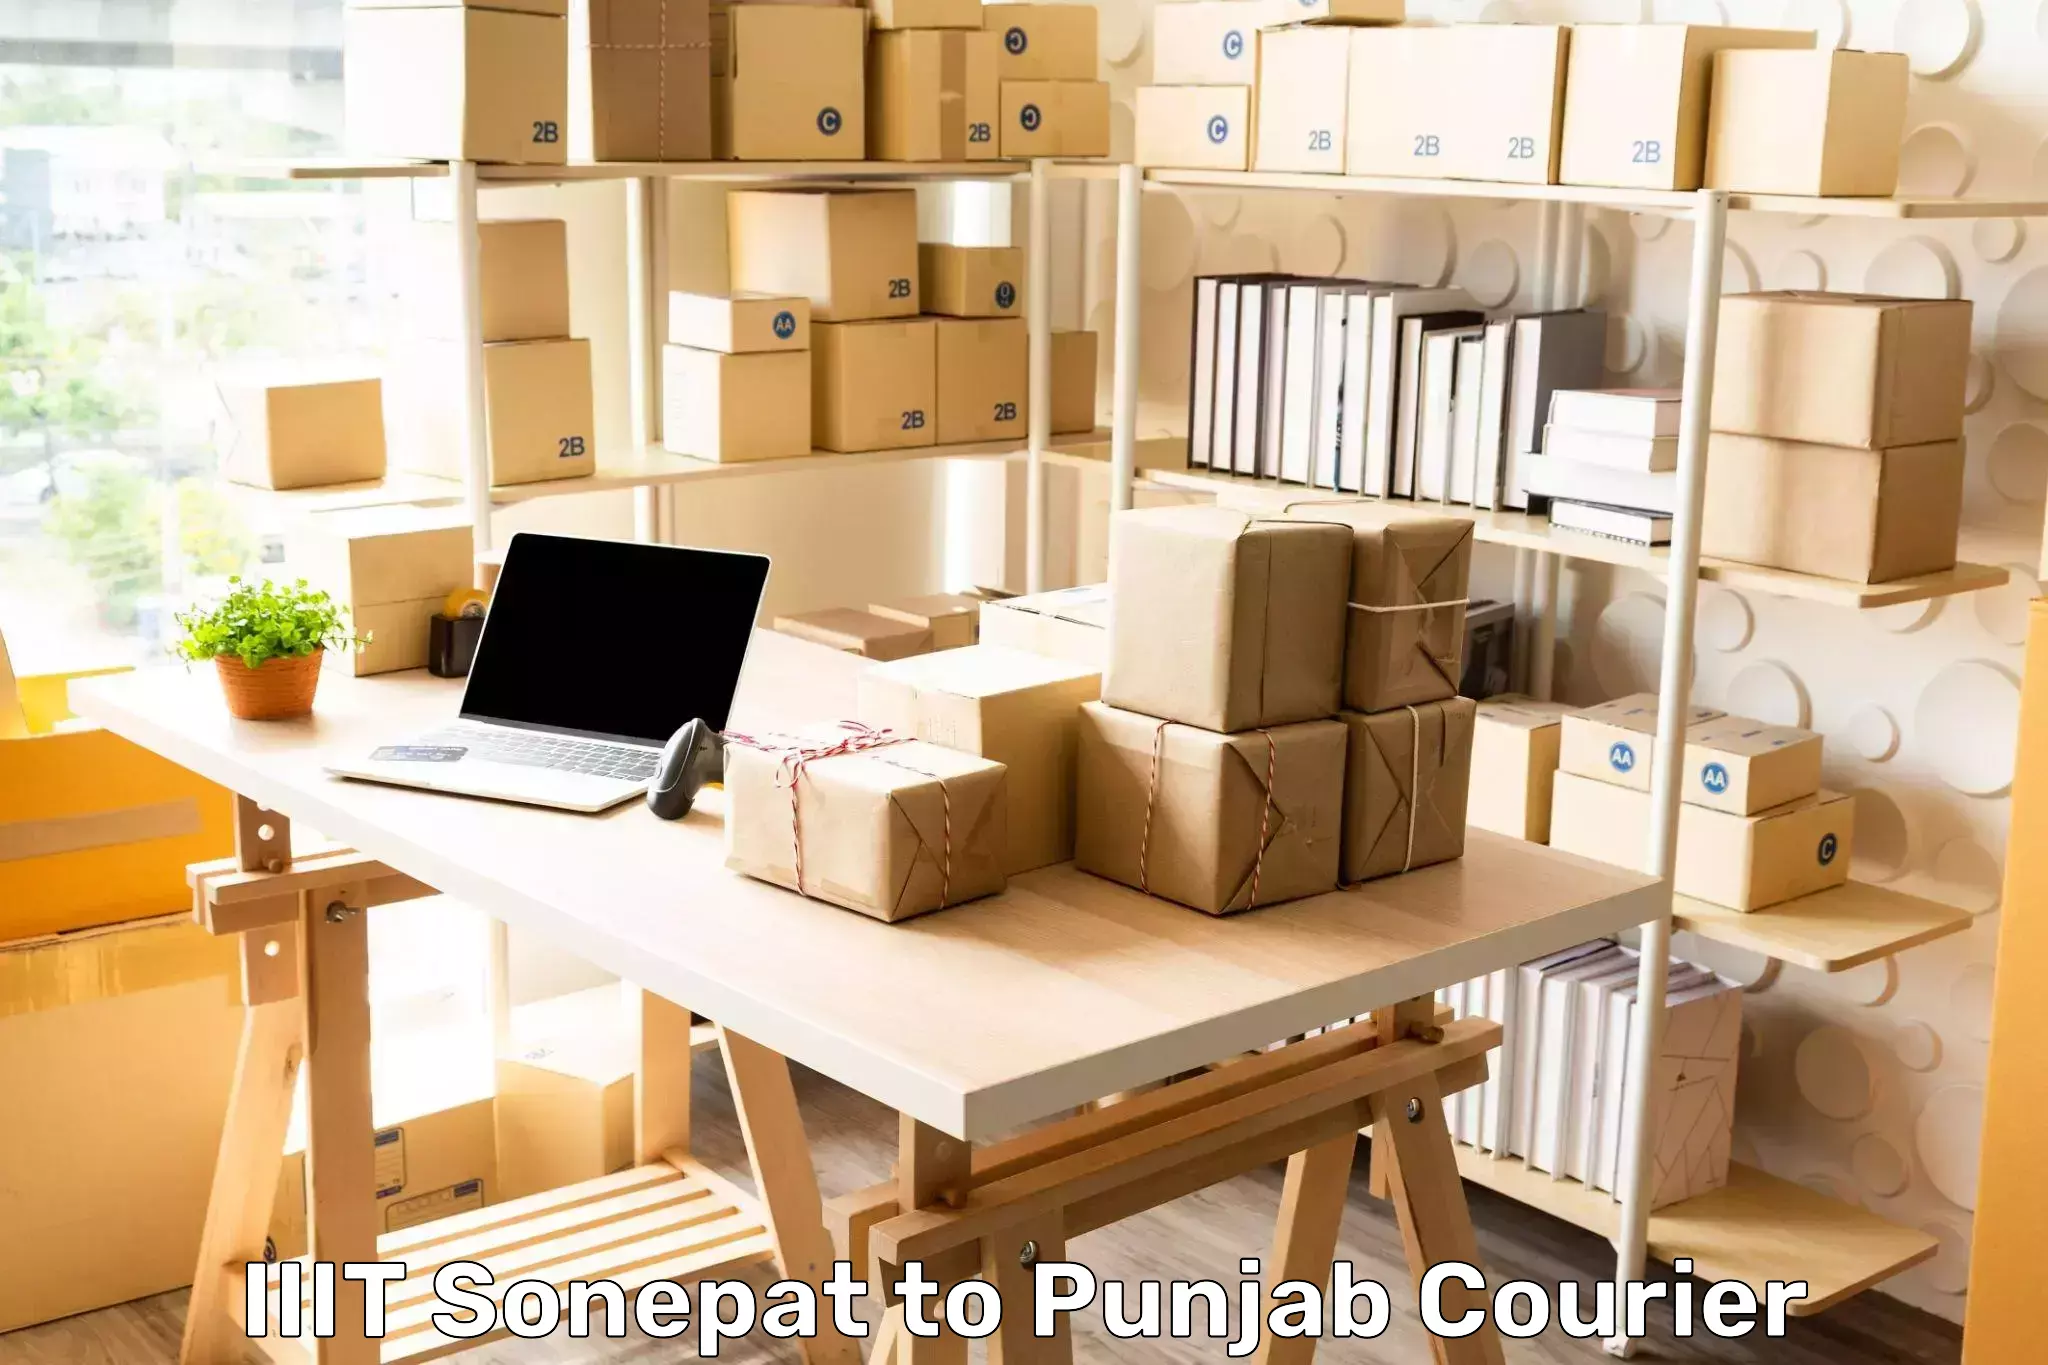 Multi-package shipping IIIT Sonepat to Faridkot